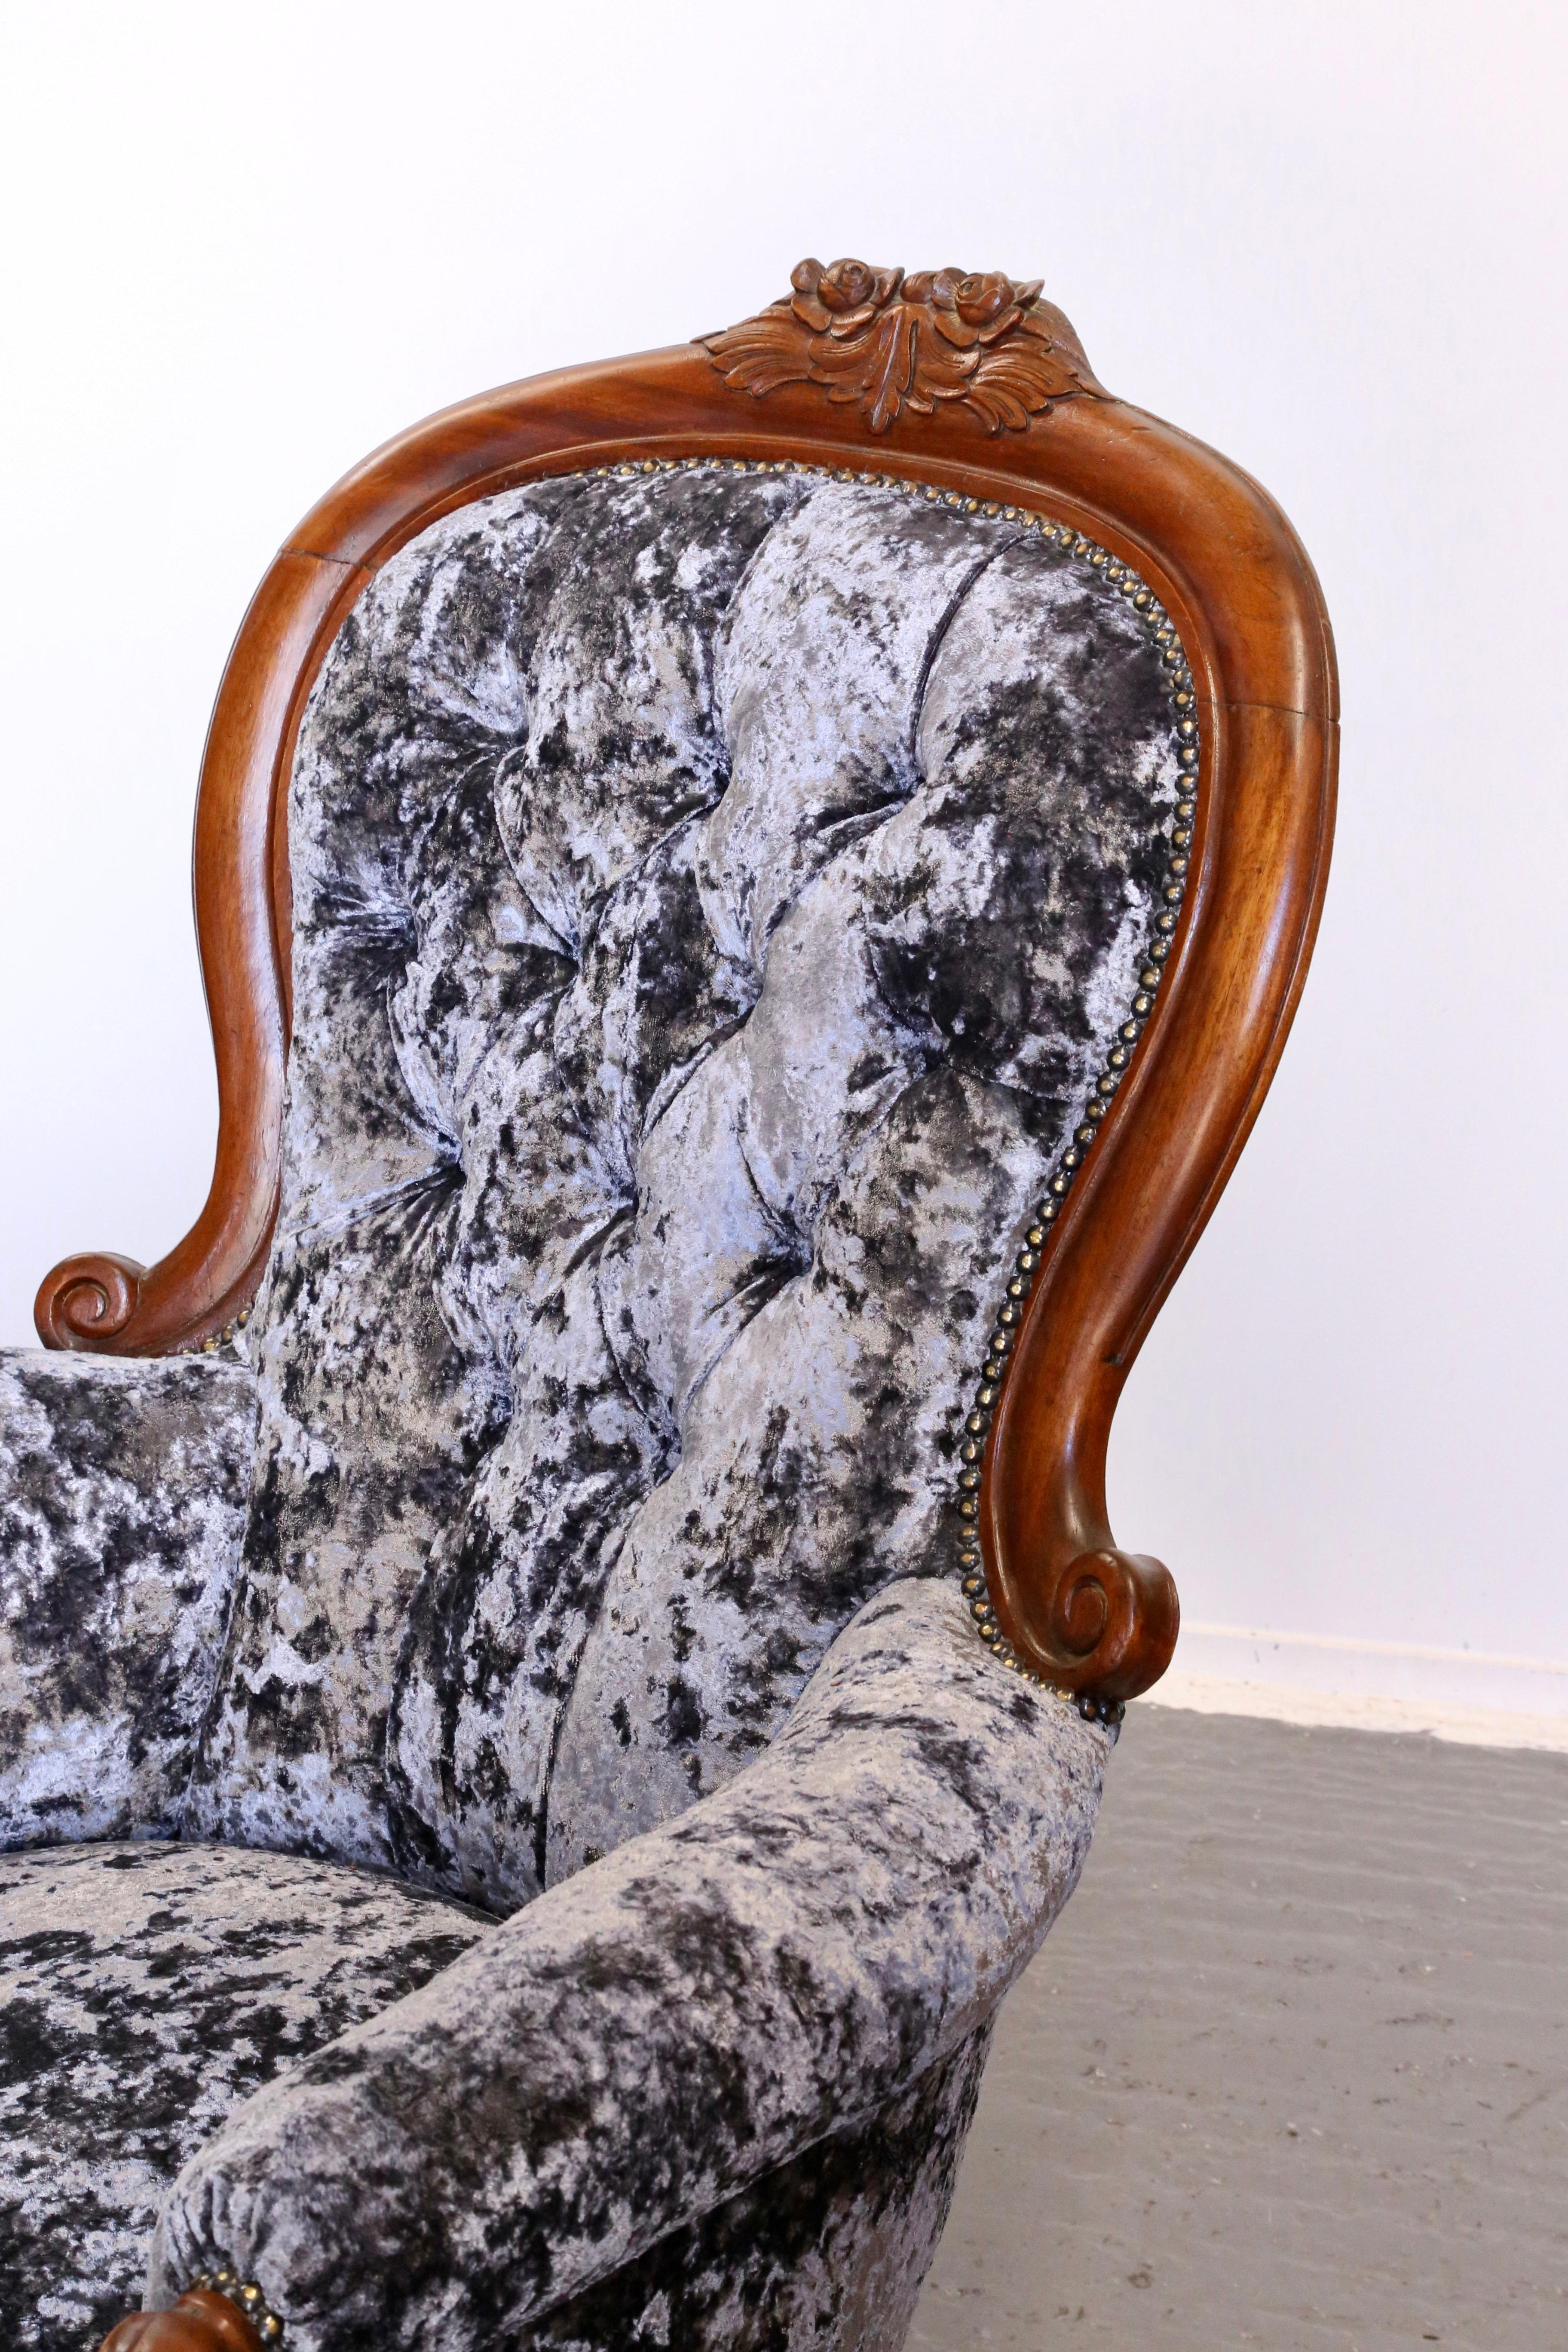 Tauchen Sie ein in die verschwenderische Eleganz der viktorianischen Ära mit diesem exquisiten antiken Sessel mit Knopfrücken, einem Meisterwerk an Handwerkskunst und Raffinesse. Das aus feinstem Mahagoni gefertigte Möbelstück strahlt Wärme und